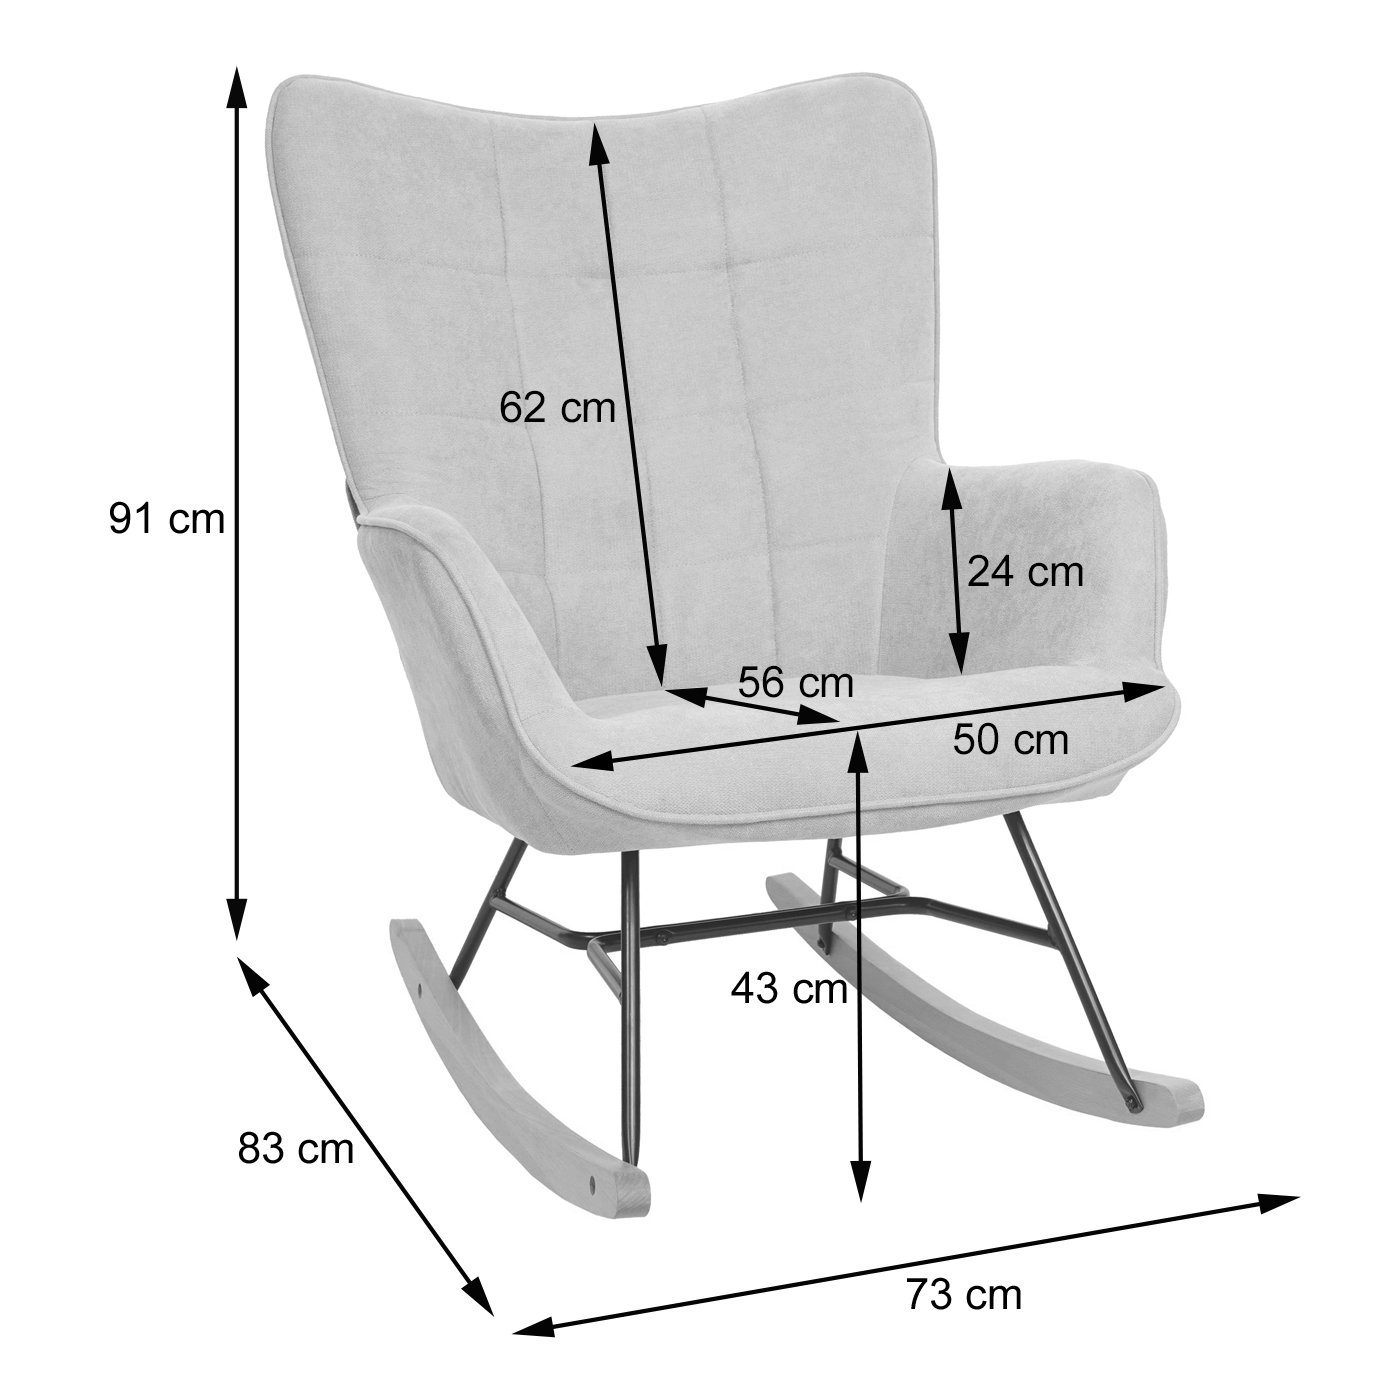 MCW-K36, Polsterung Schaukelfunktion, creme-beige | MCW Schaukelstuhl Große Bequeme Sitzfläche, creme-beige